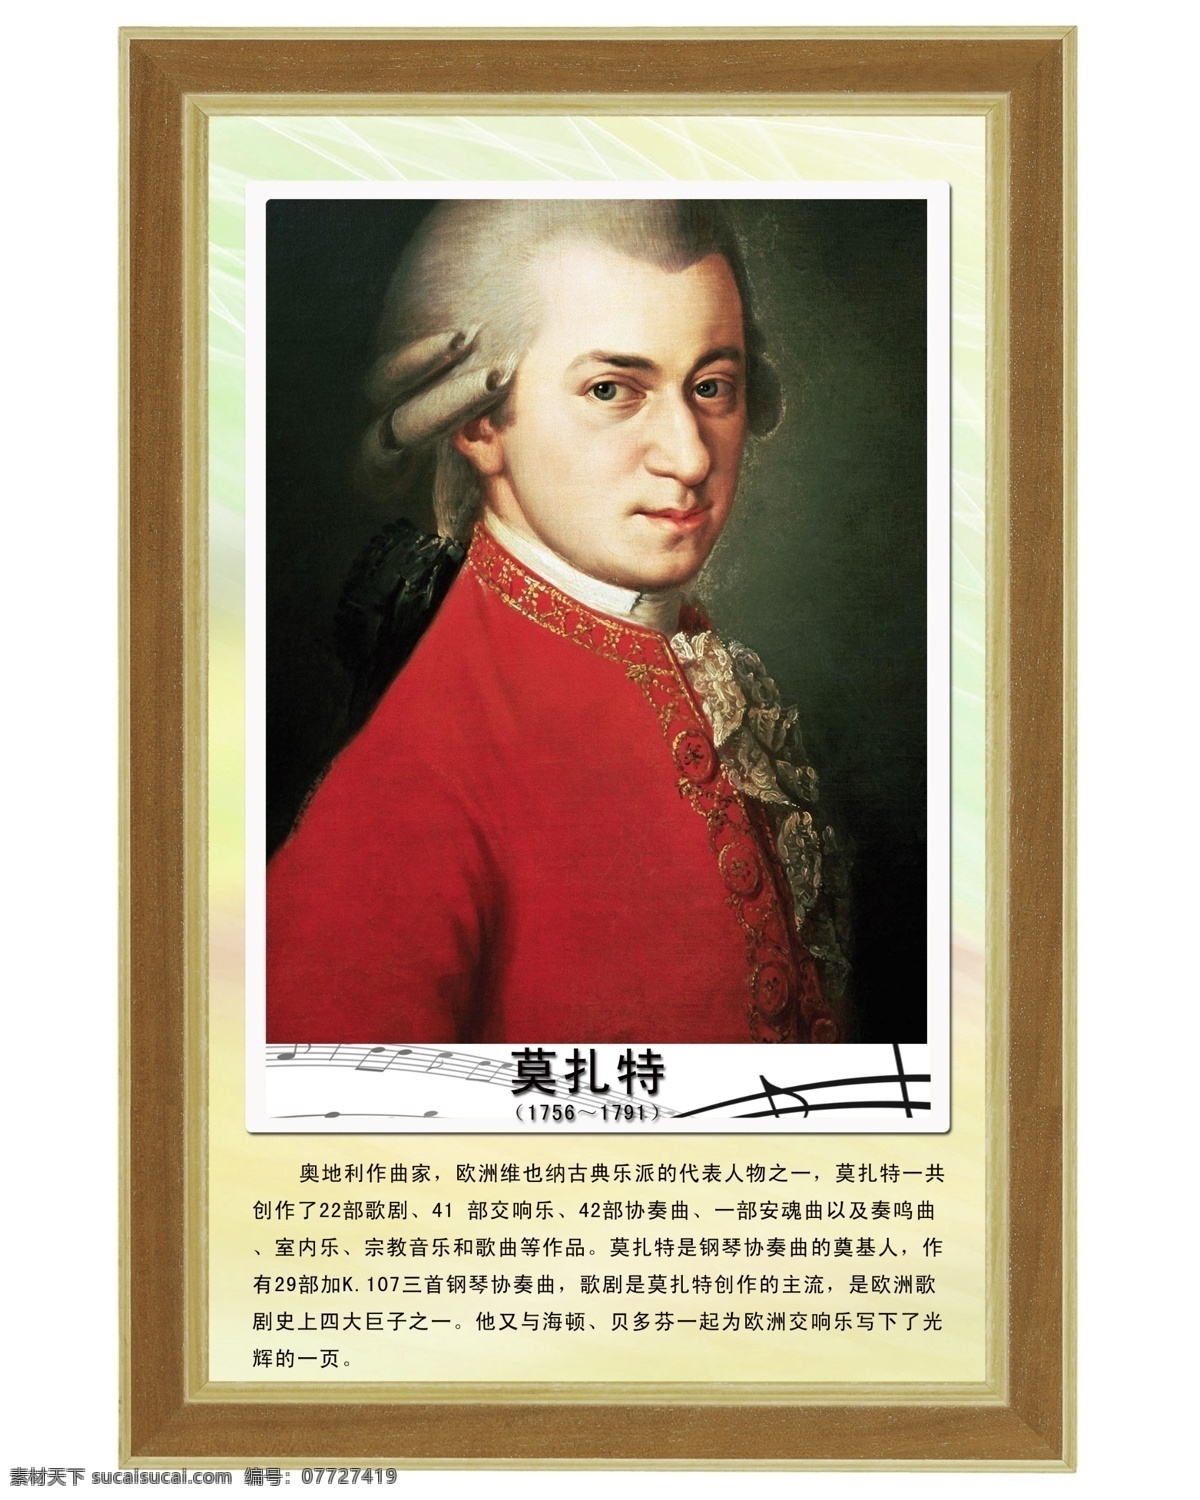 莫扎特 历史名人 中国历史名人 历史 名人 古代 政治家 军事家 科学家 数学家 展板模板 广告设计模板 源文件